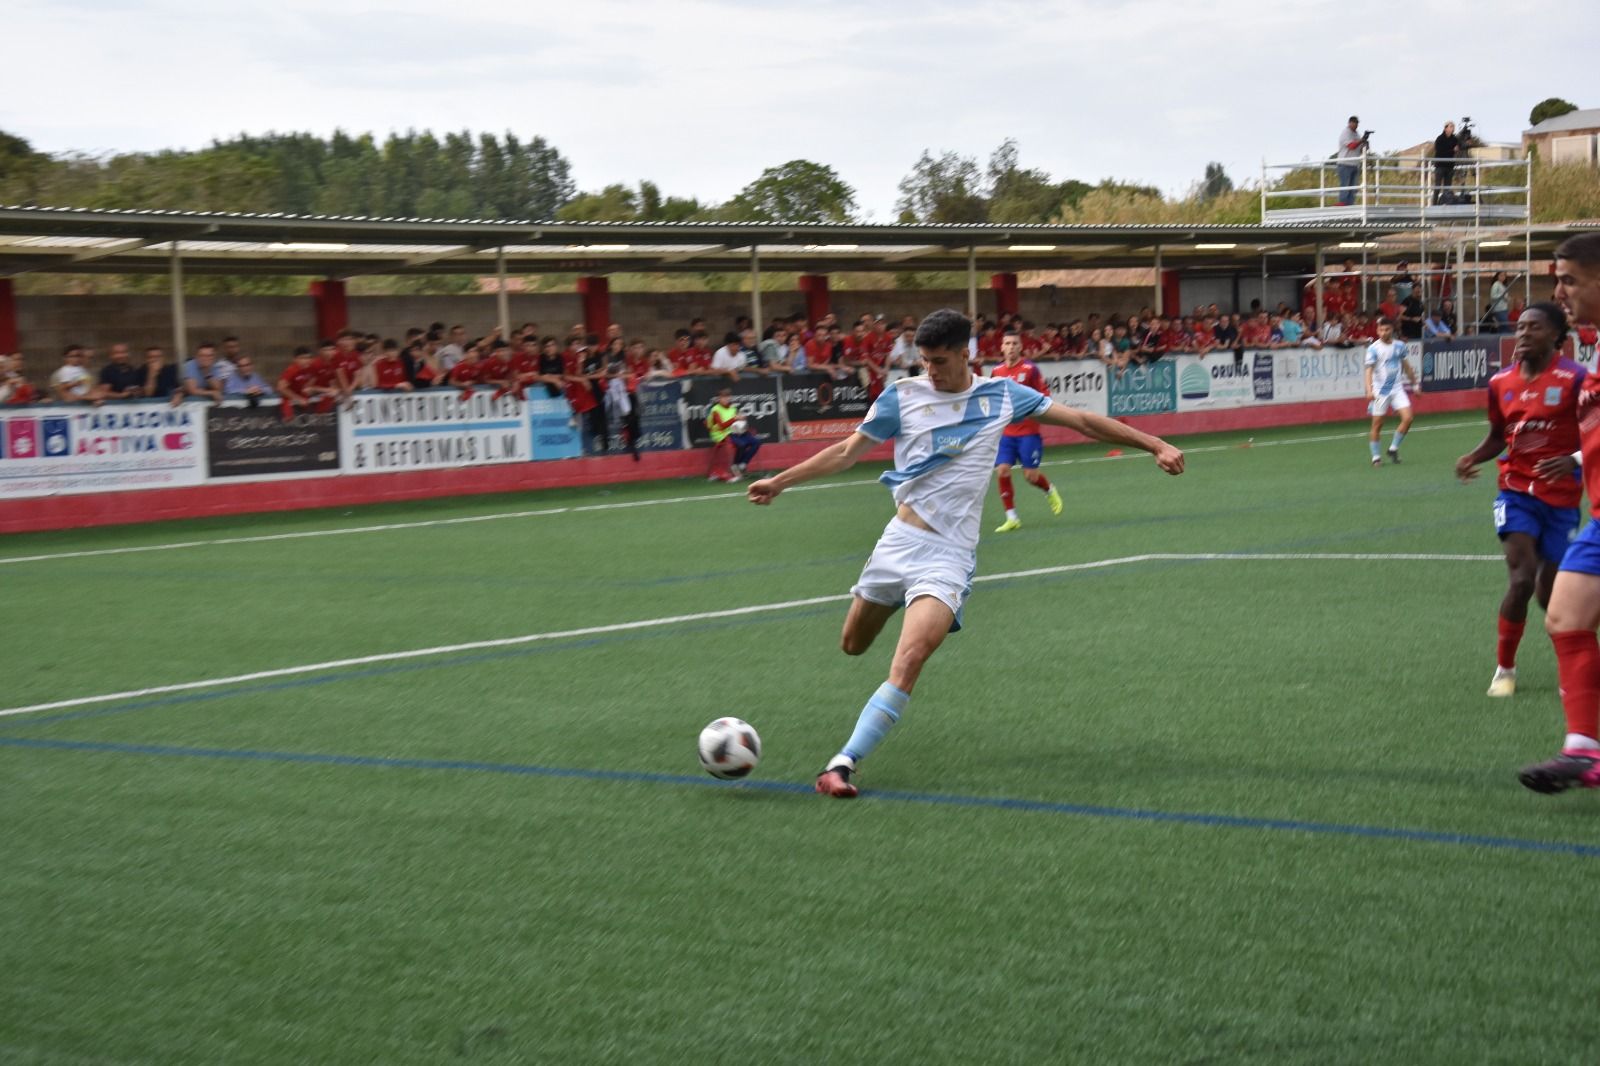 SD Tarazona - SD Compostela: las imágenes del partido de vuelta del play-off